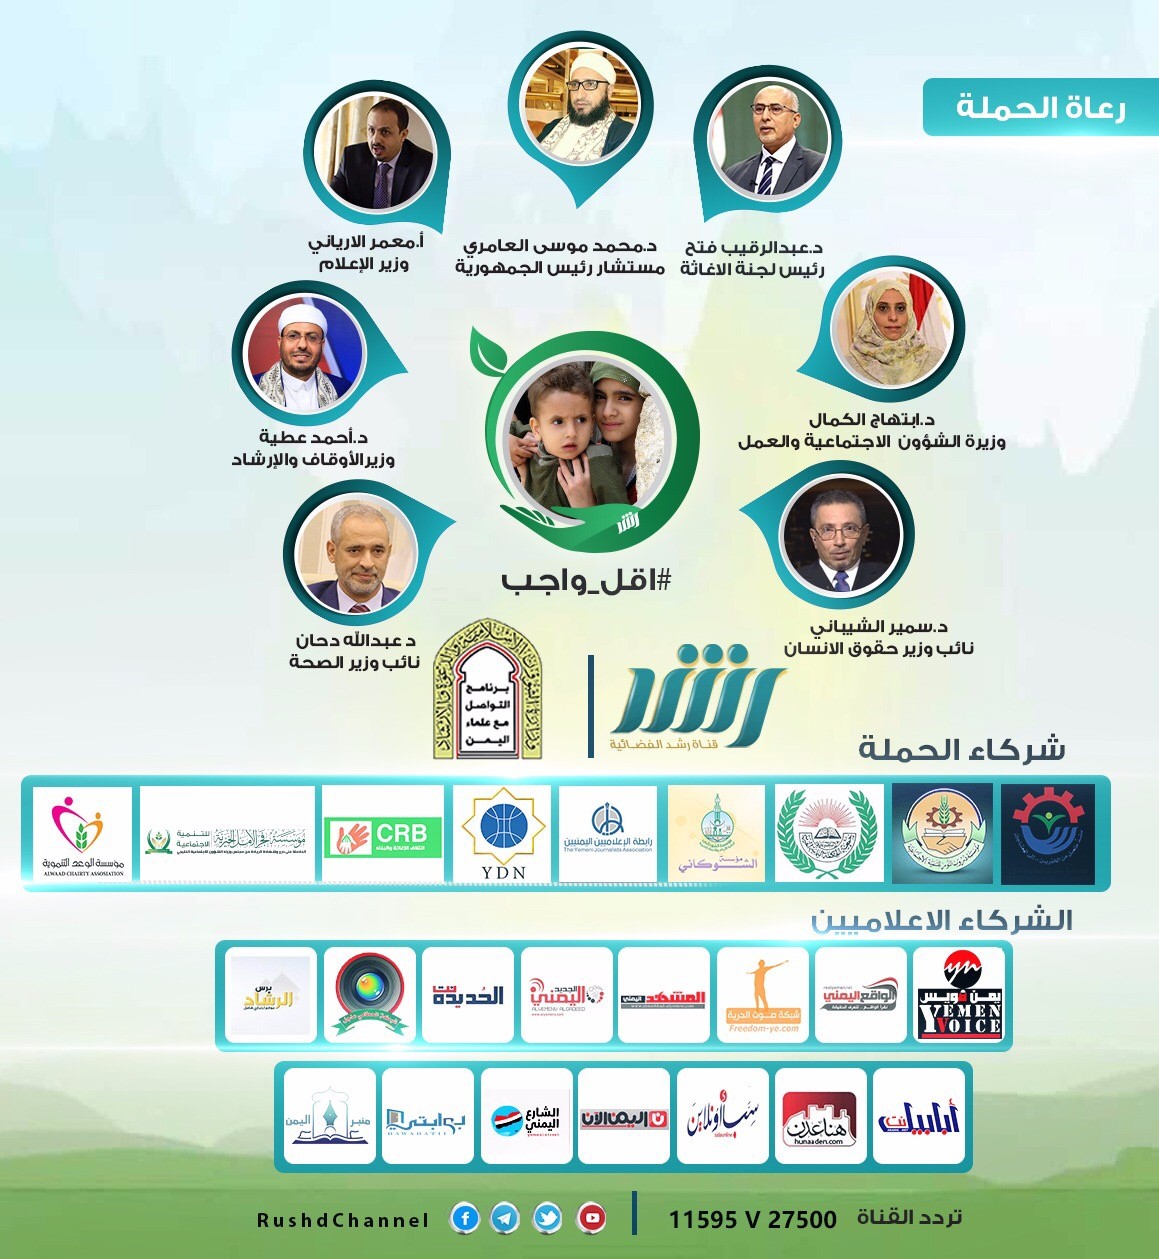 عاجل/ قناة رشد الفضائية تعلن إنطلاقة حملة #اقل_واجب لتسليط الضوء على الوضع الانساني في اليمن